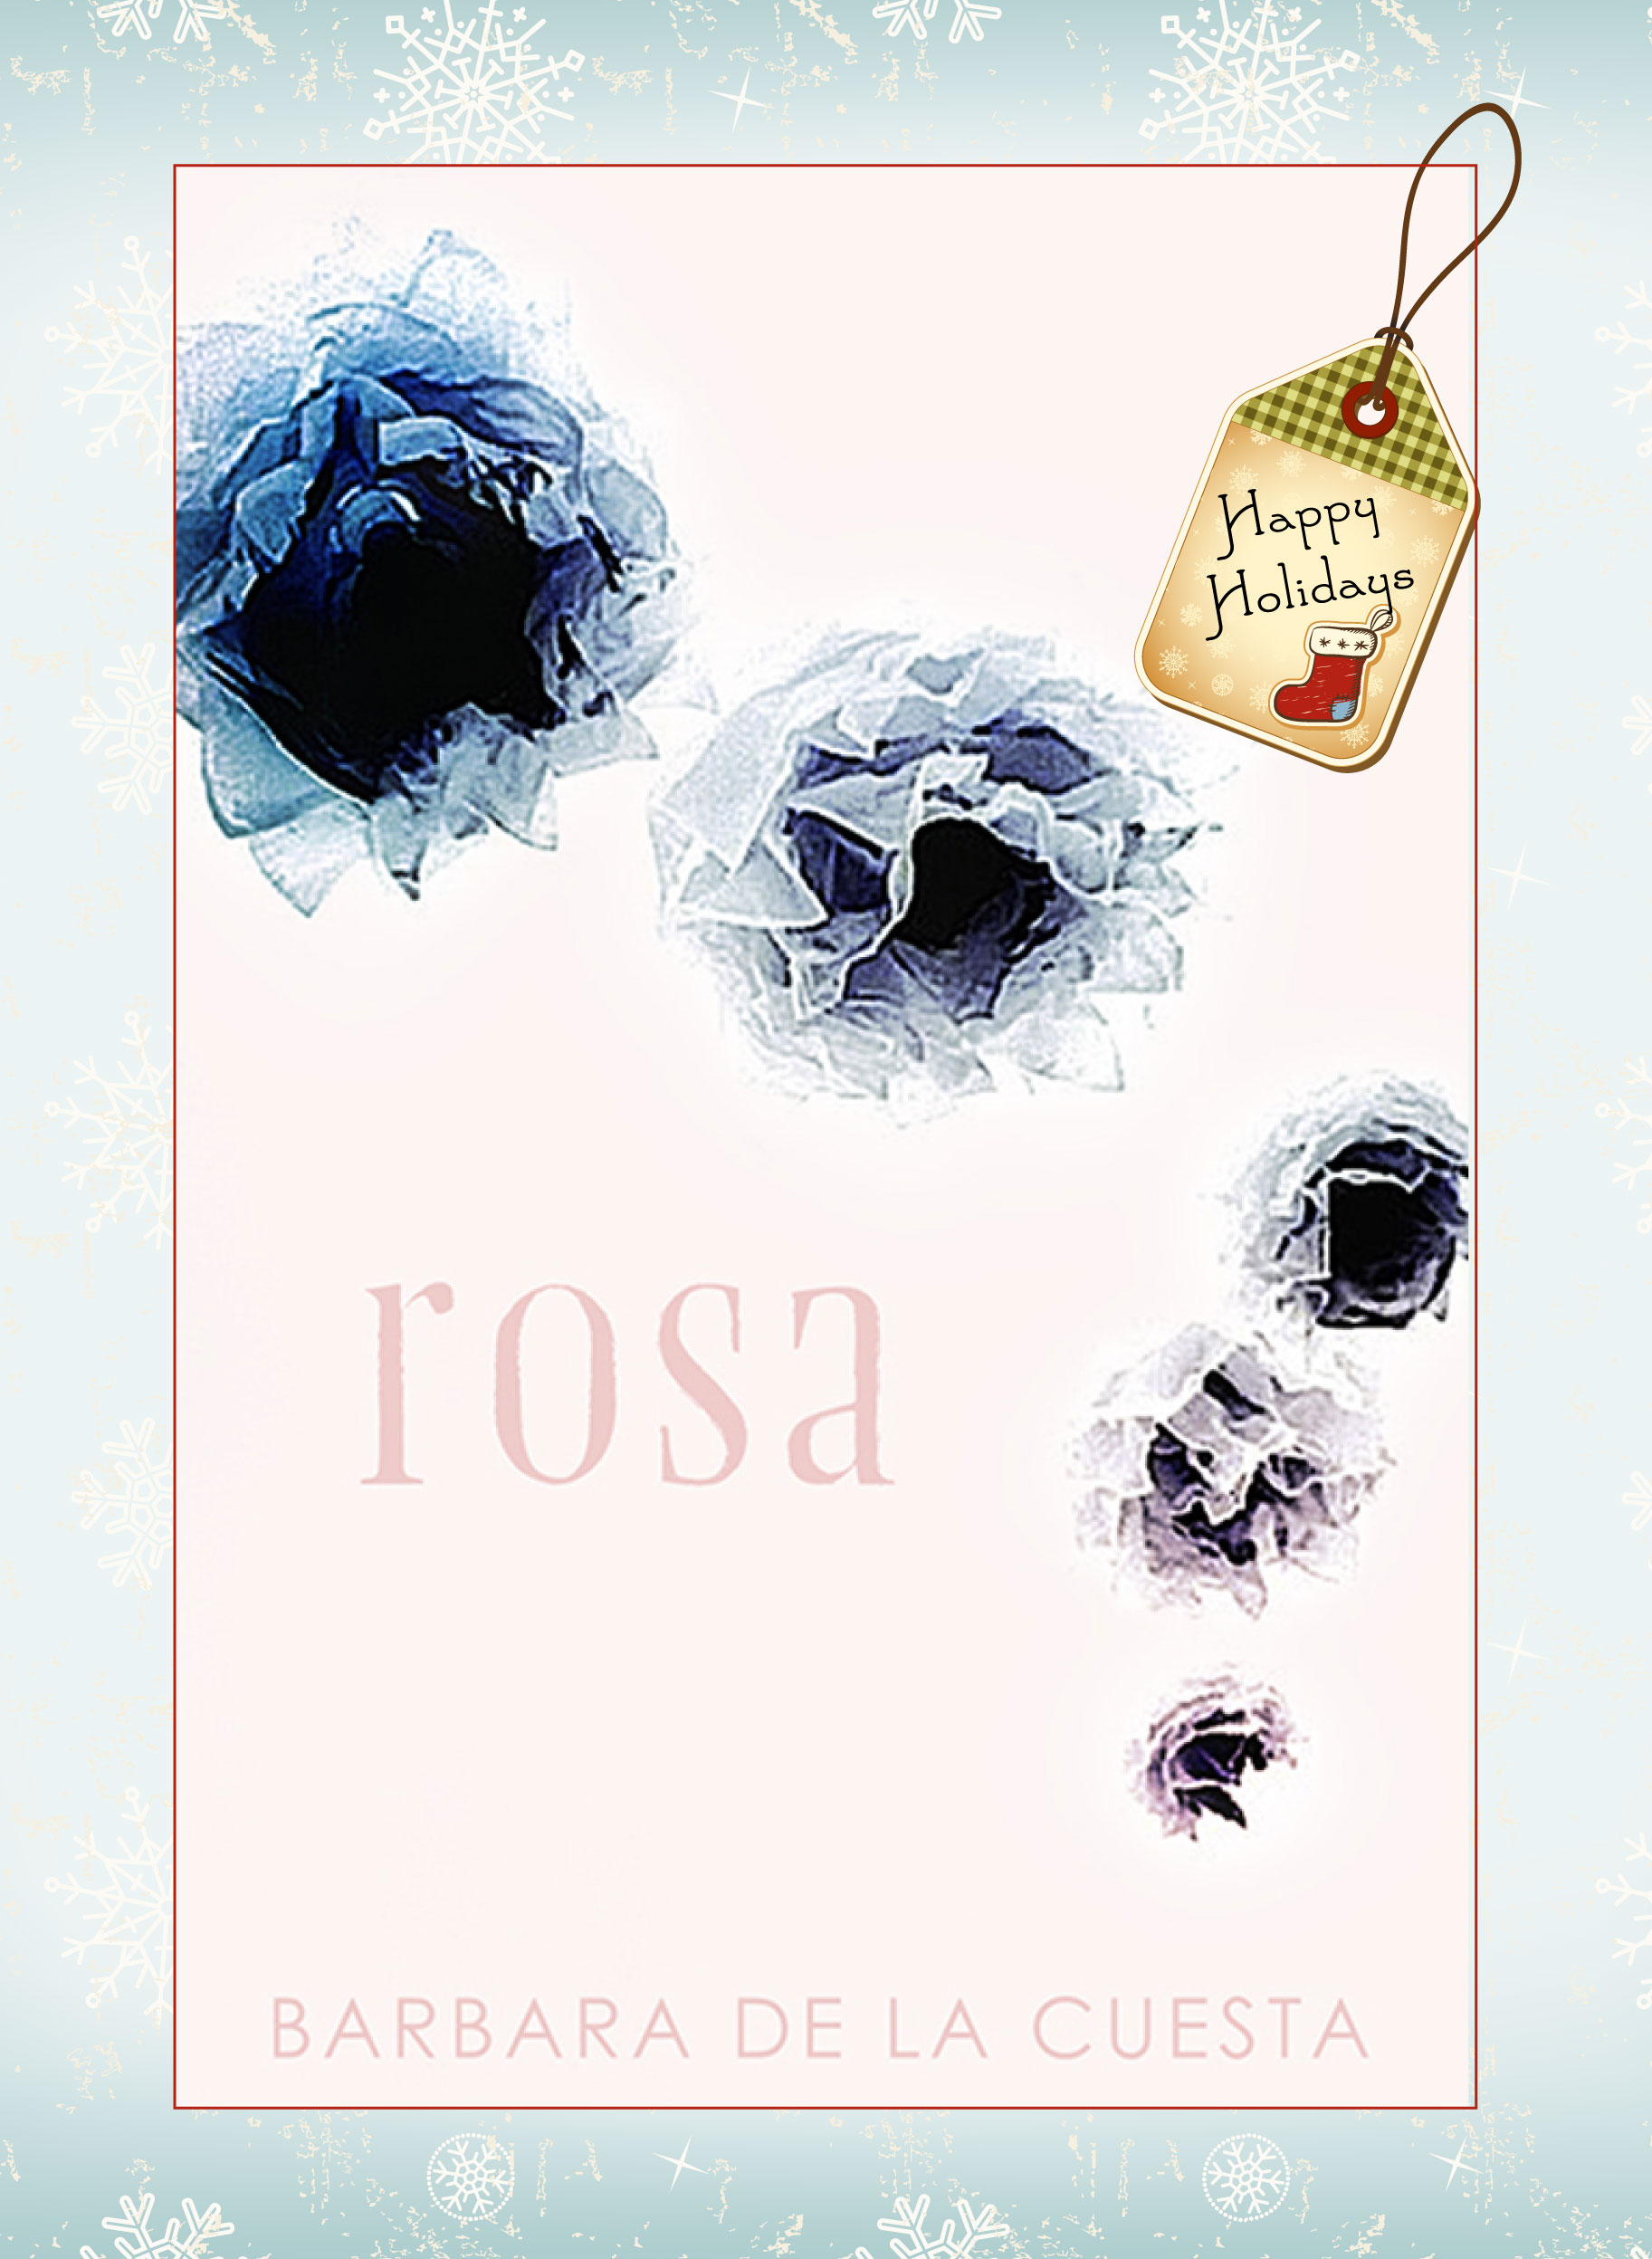 Rosa by Barbara de la Cuesta